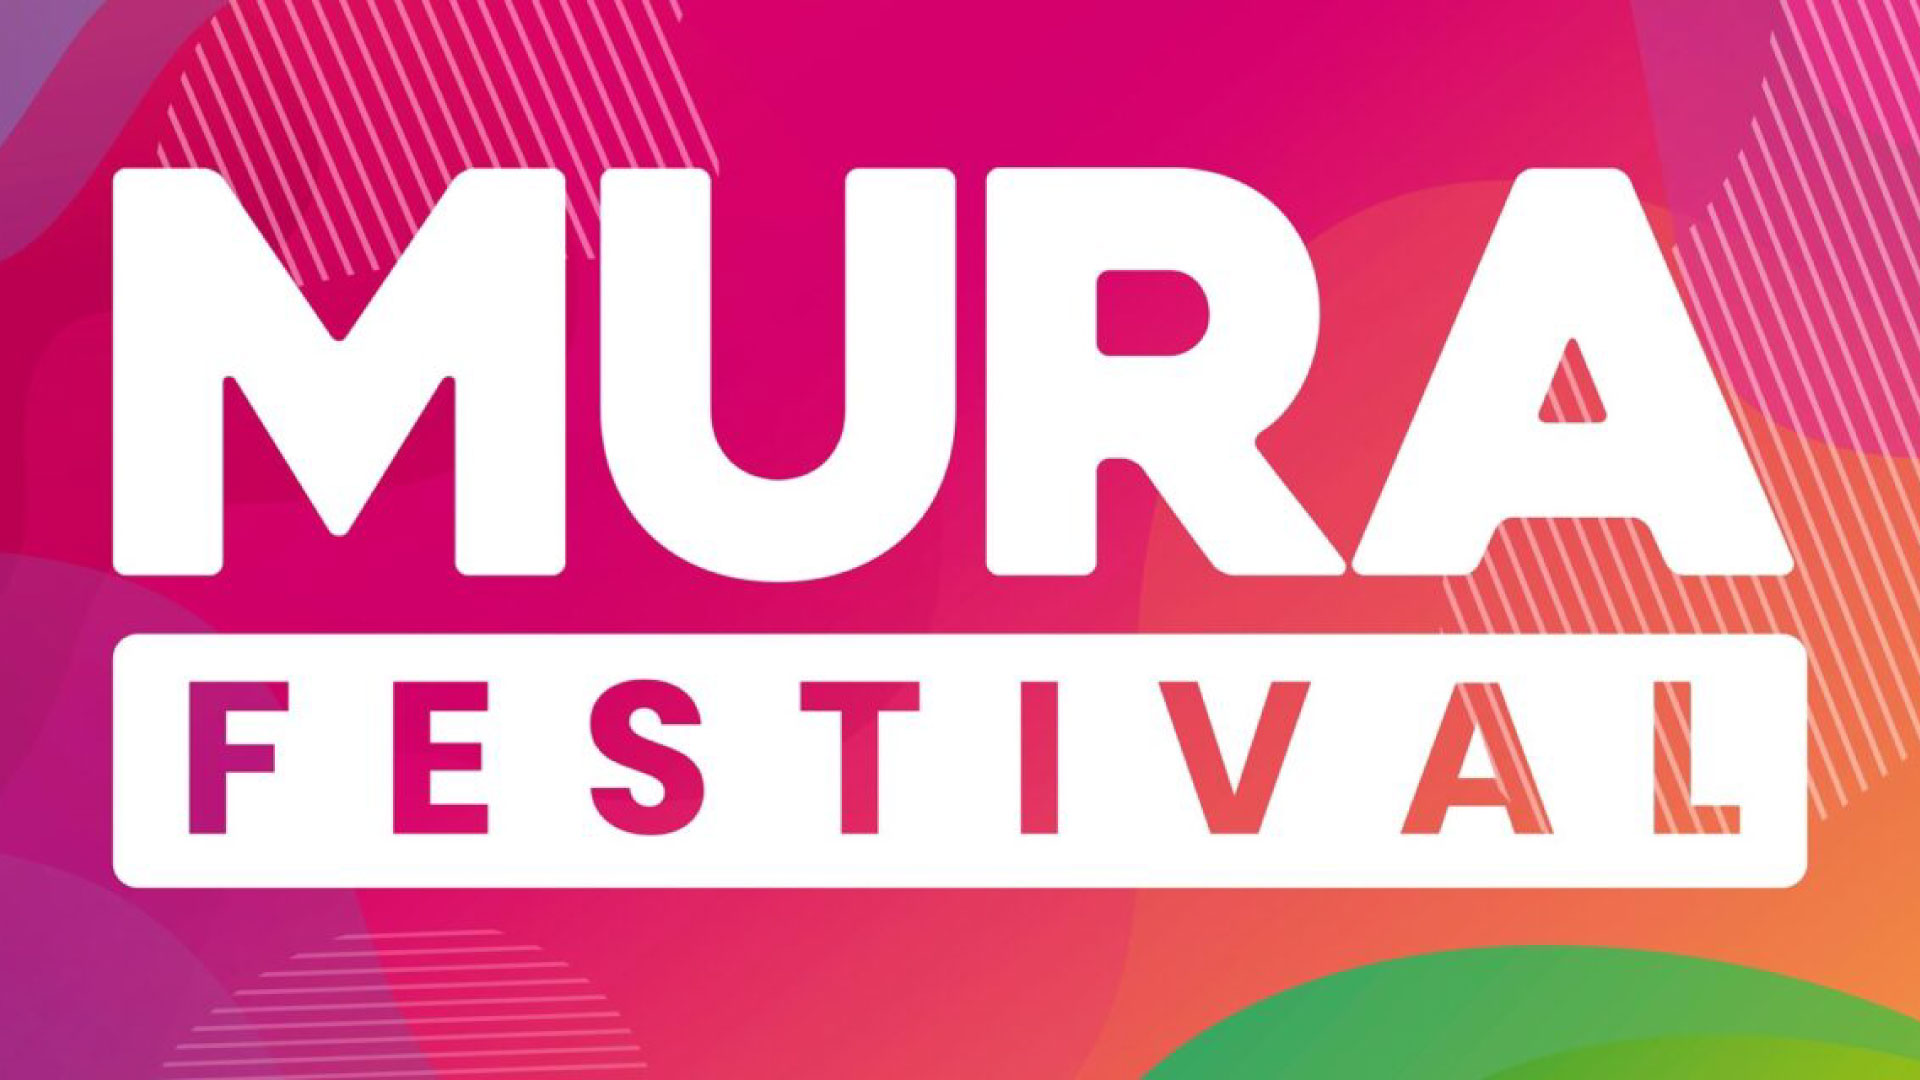 Mura Festival